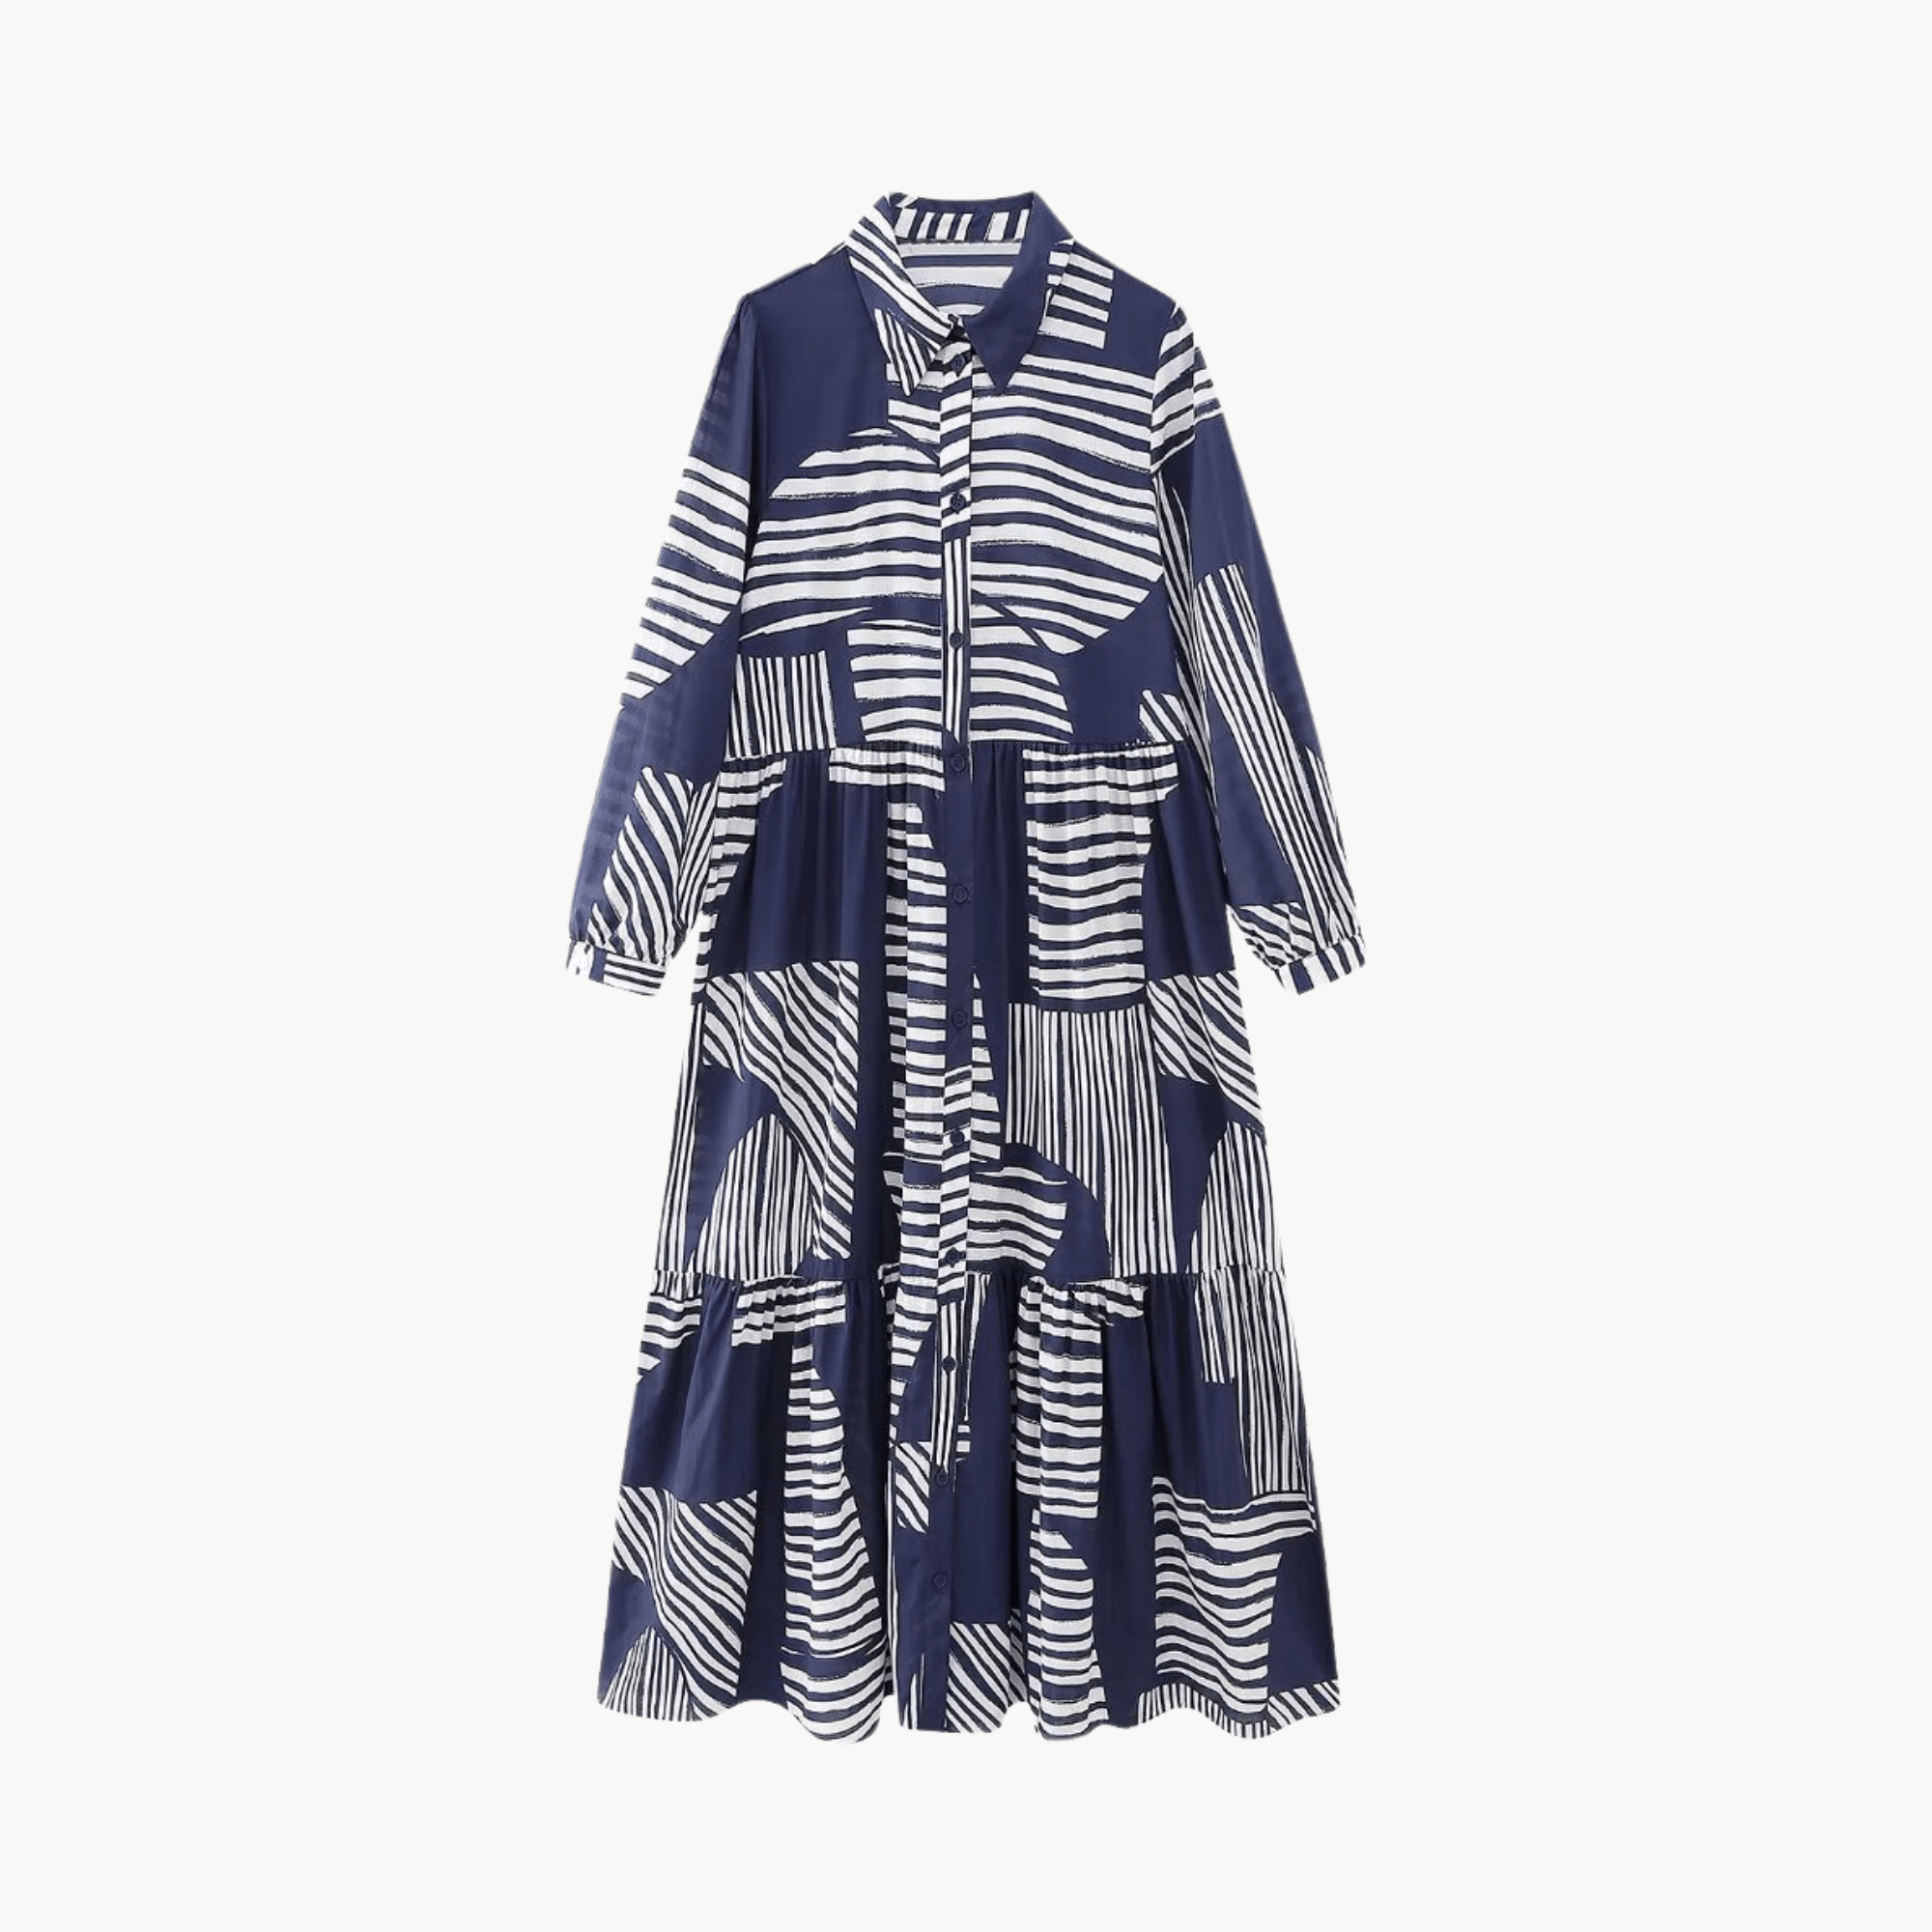 Vintage Contrast Color Stripes Dress - Kelly Obi New York